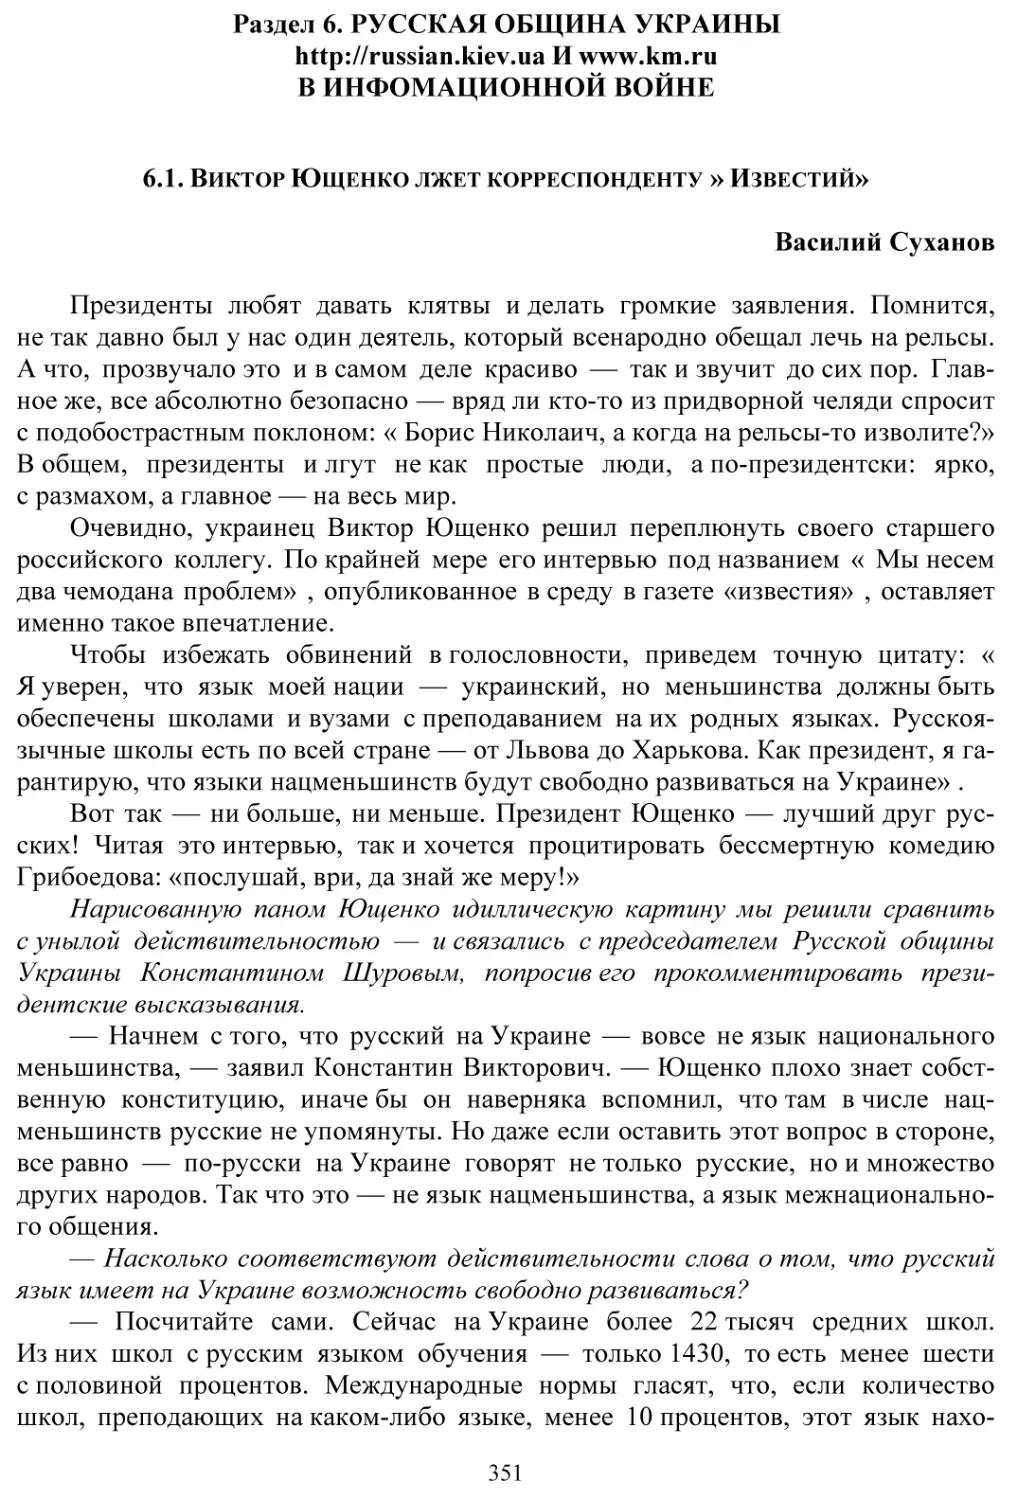 Раздел 6. Русская община Украины в информационной войне